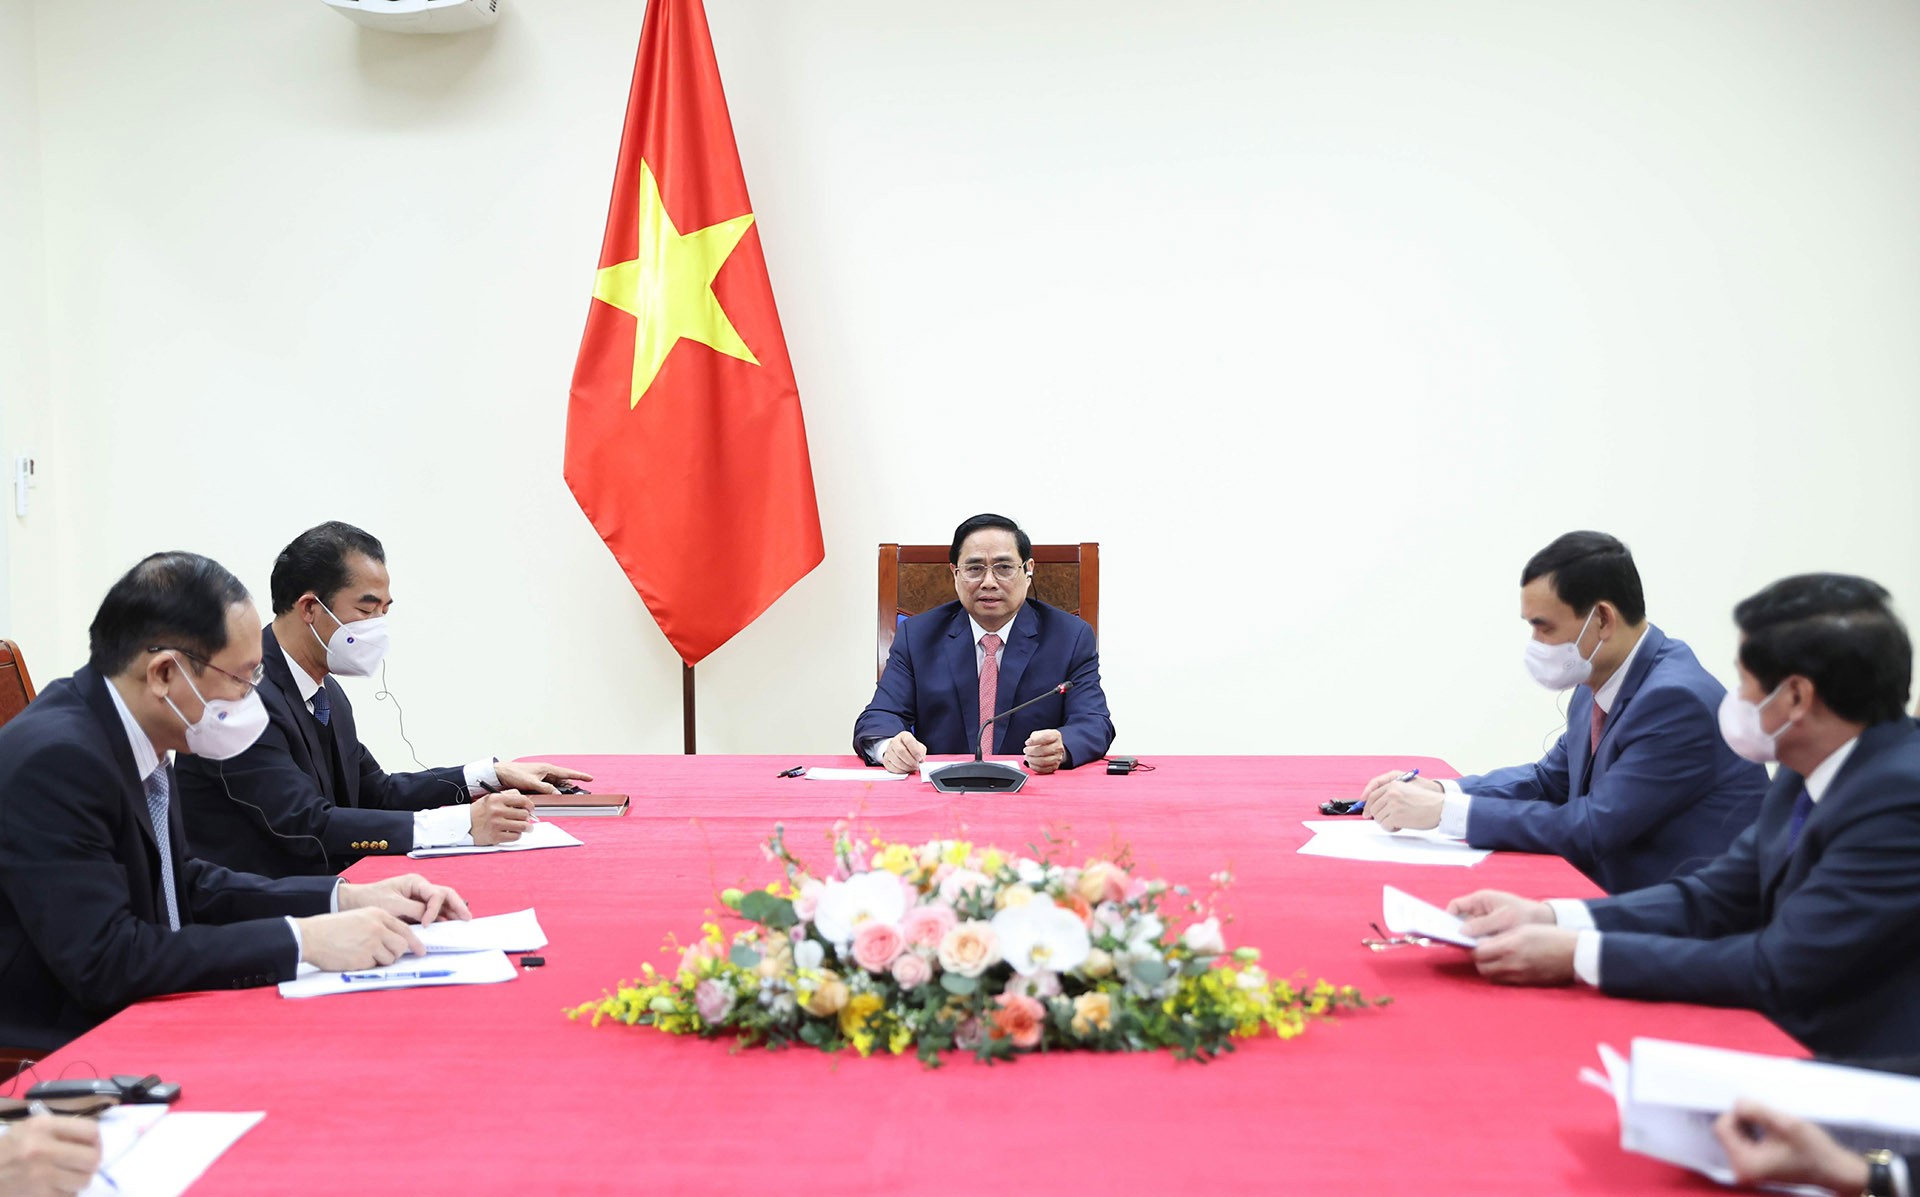 Thủ tướng mong muốn Hà Lan hỗ trợ Việt Nam kết nối các cảng và khu công nghiệp với châu Âu, giúp tăng sản lượng hàng hóa xuất khẩu của Việt Nam vào các thị trường này.